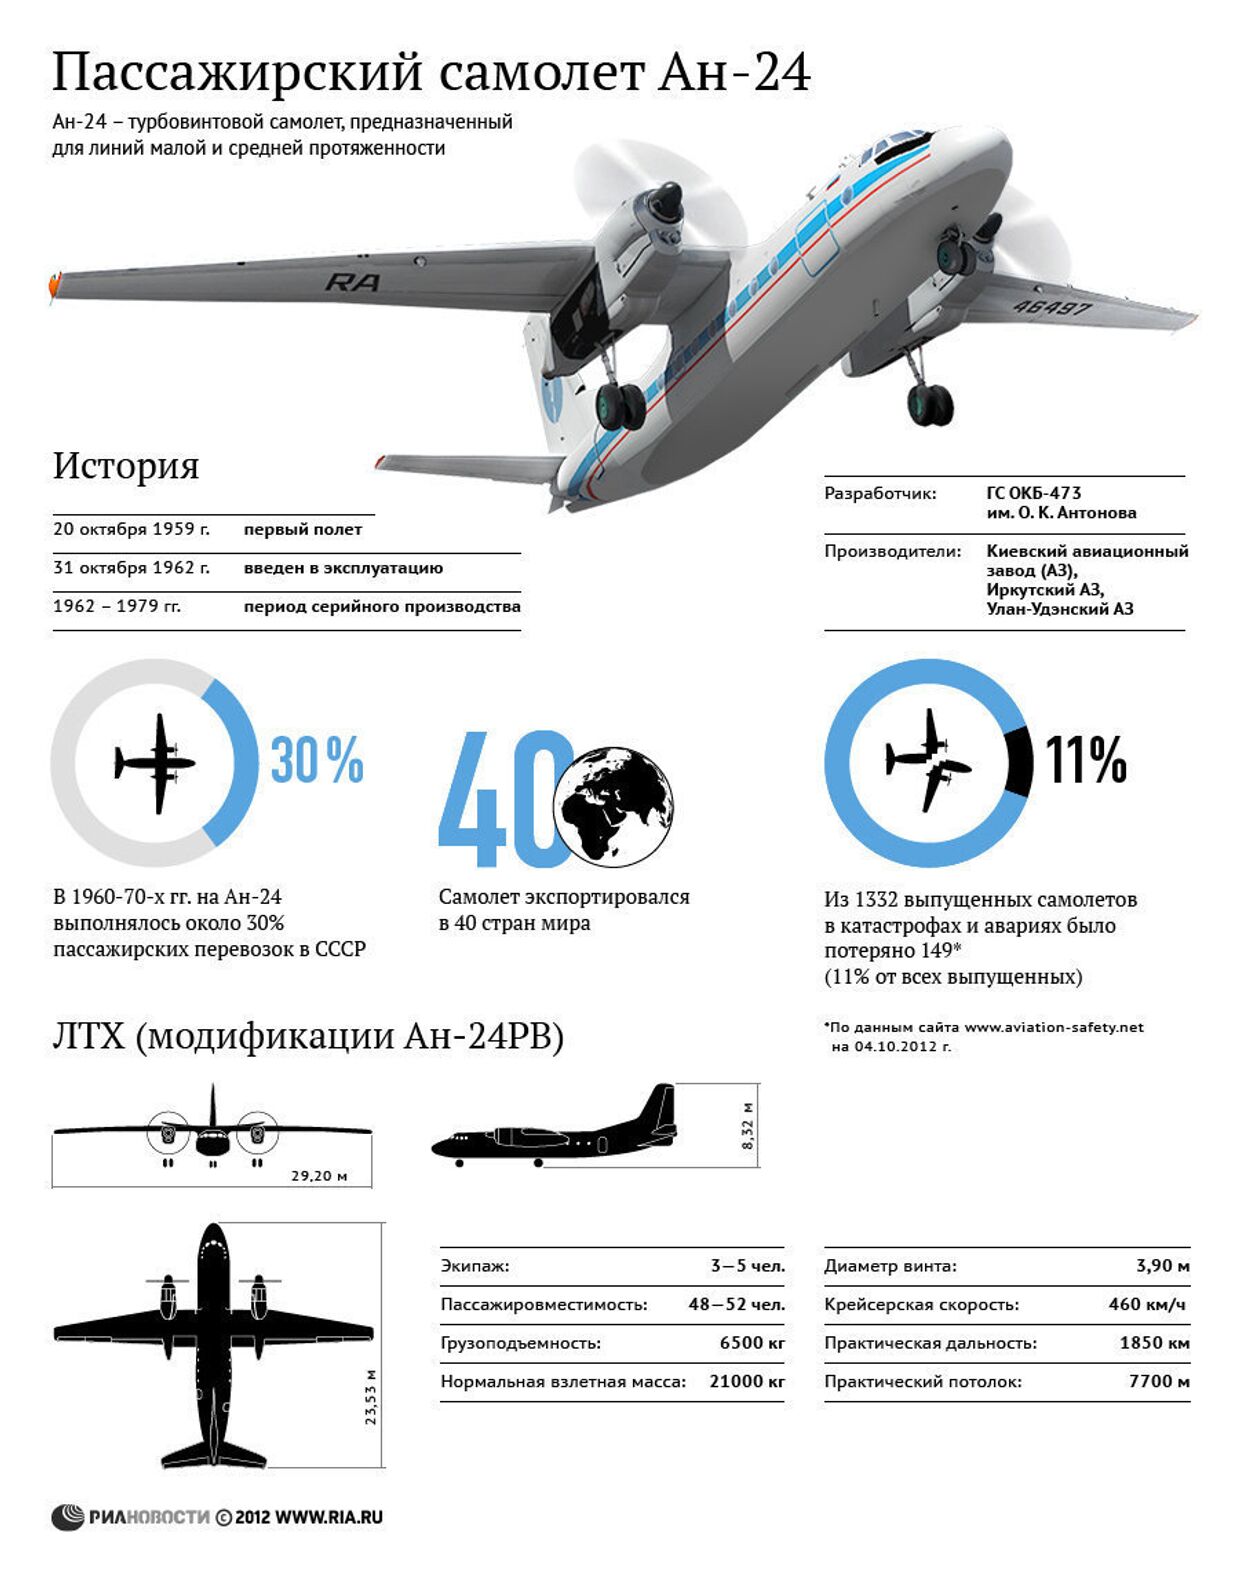 Пассажирский самолет Ан-24: история, модификации, характеристики